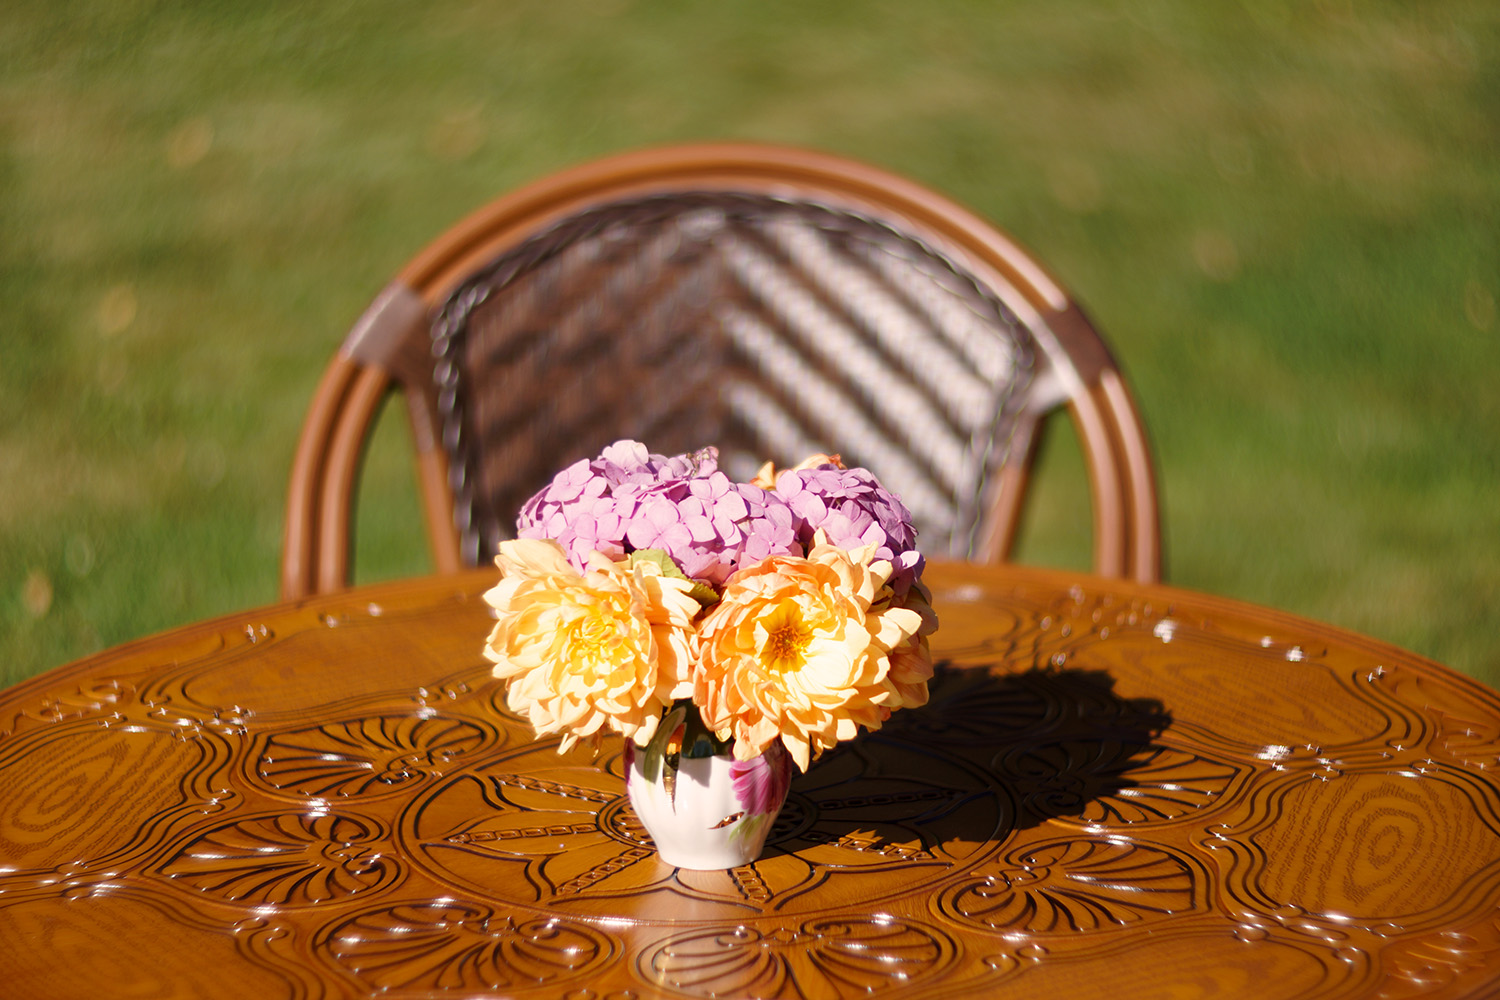 Плетёное кресло в сад на дачу, круглый садовый стол из литого алюминия под дерево, мебель на веранду и в беседку, фабрика садовой мебели, столы и кресла для дачи и загородного дома